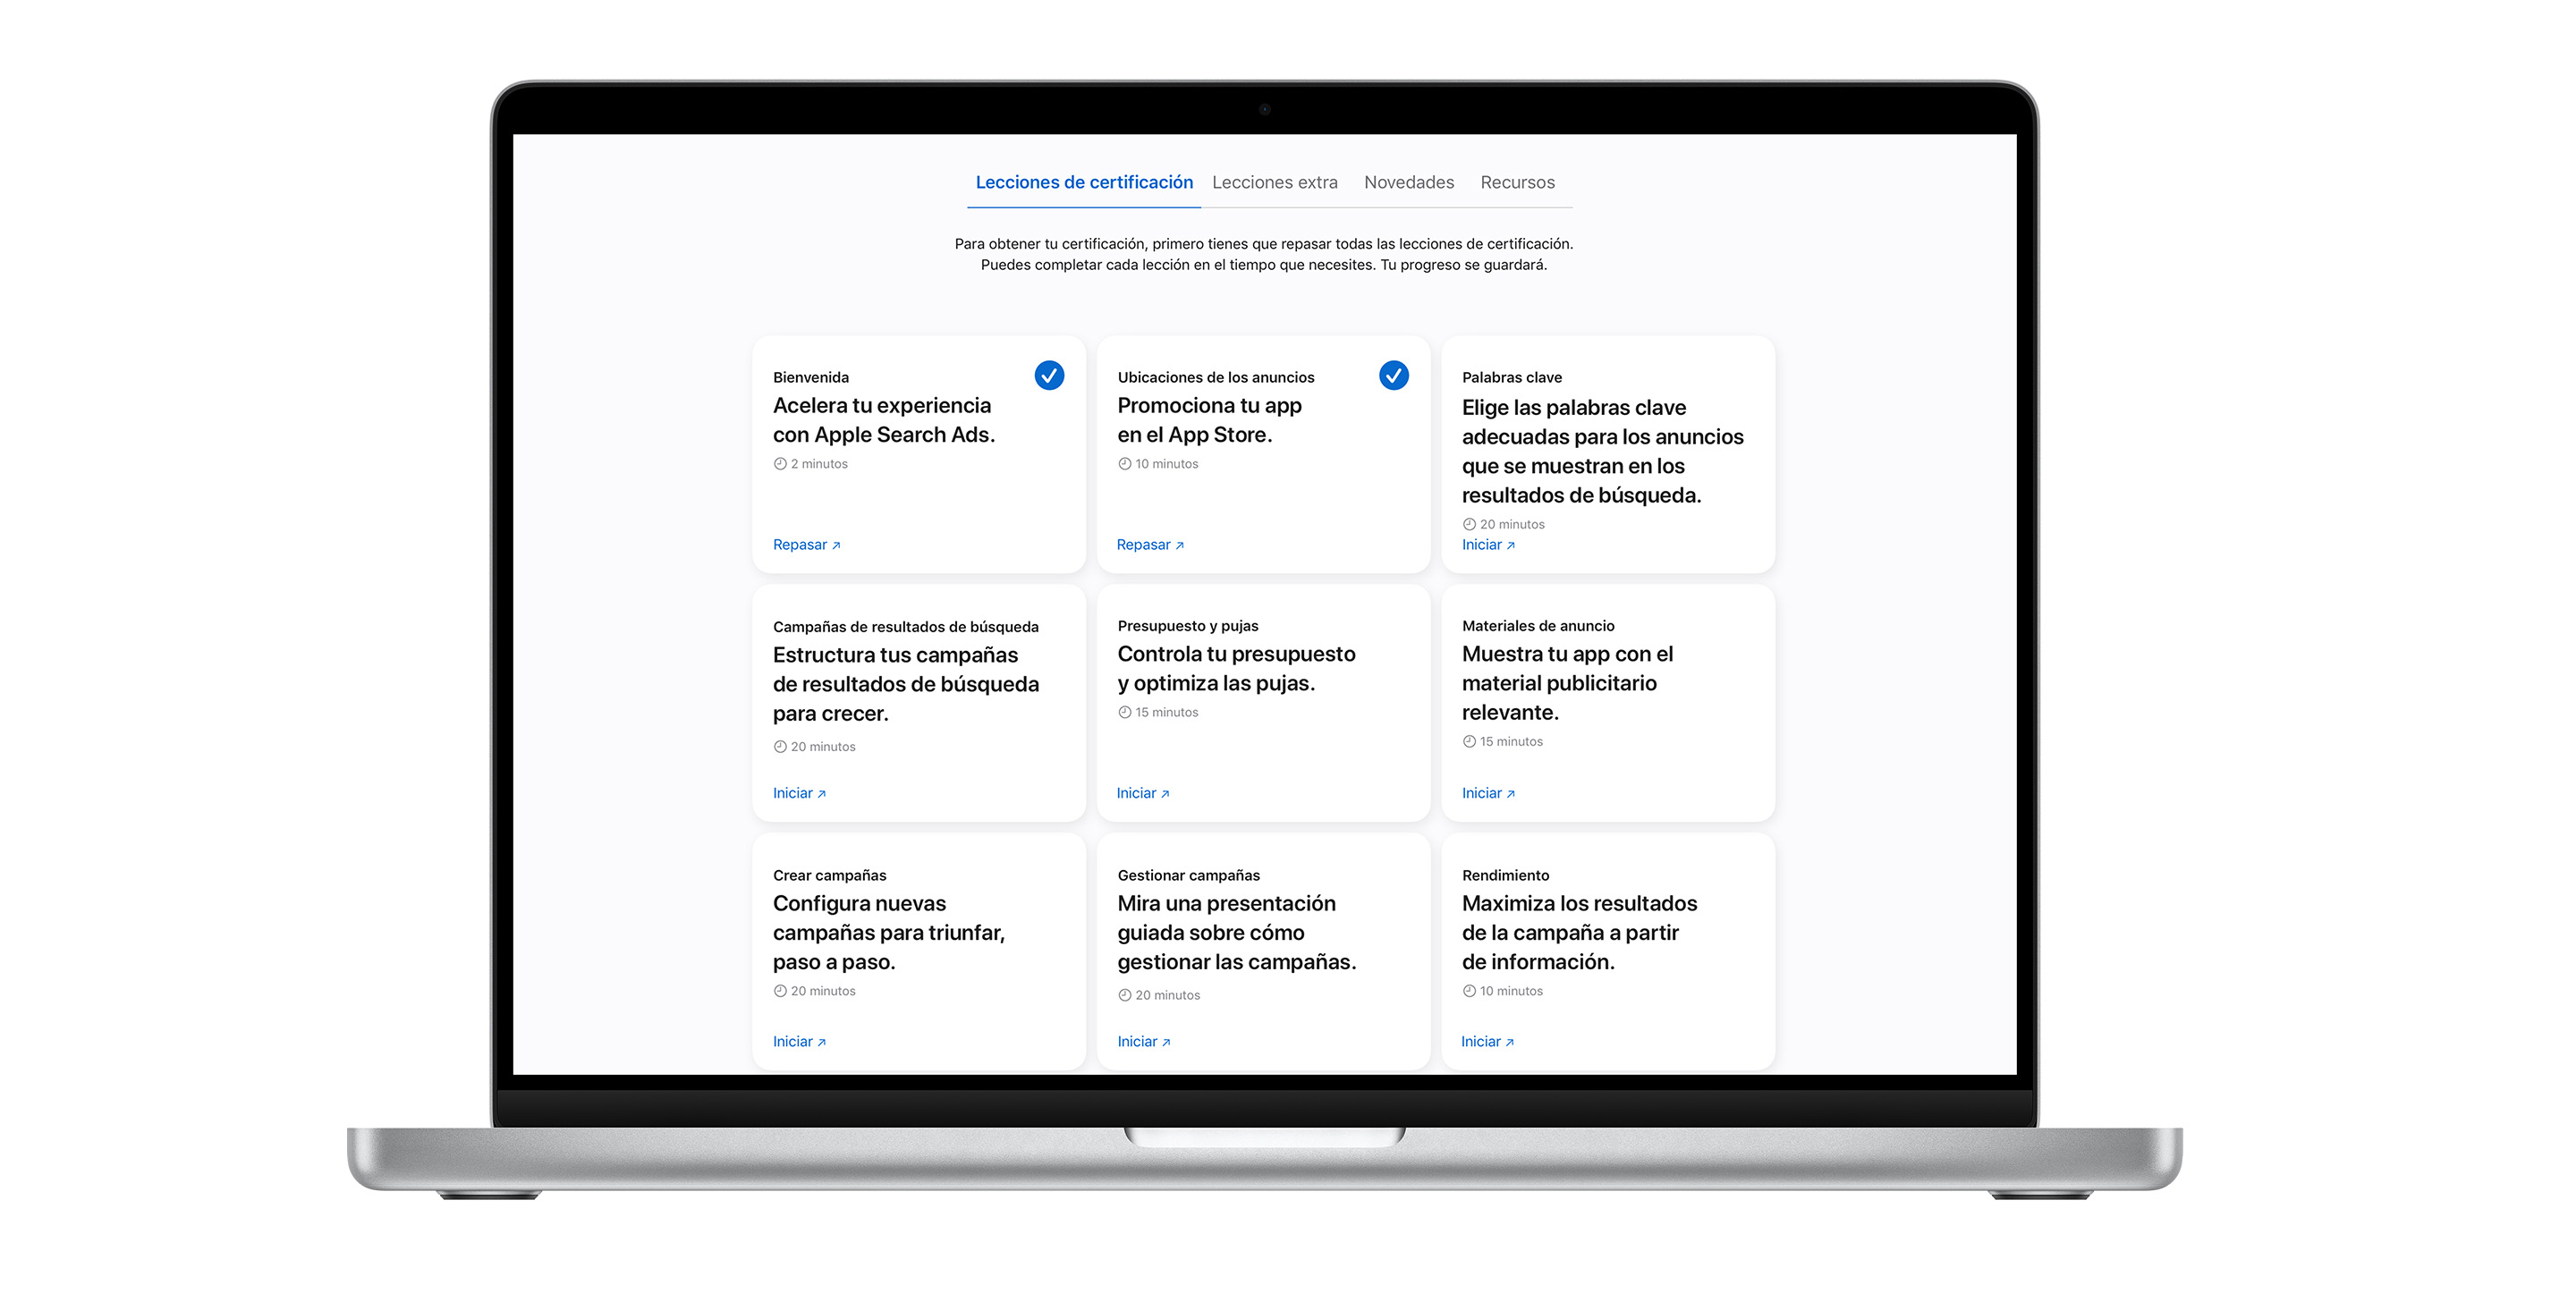 La página de lecciones de la certificación de Apple Search Ads mostrando nueve módulos de lecciones. Las dos primeras lecciones tienen marcas de verificación azules, lo que indica que ya se han completado.